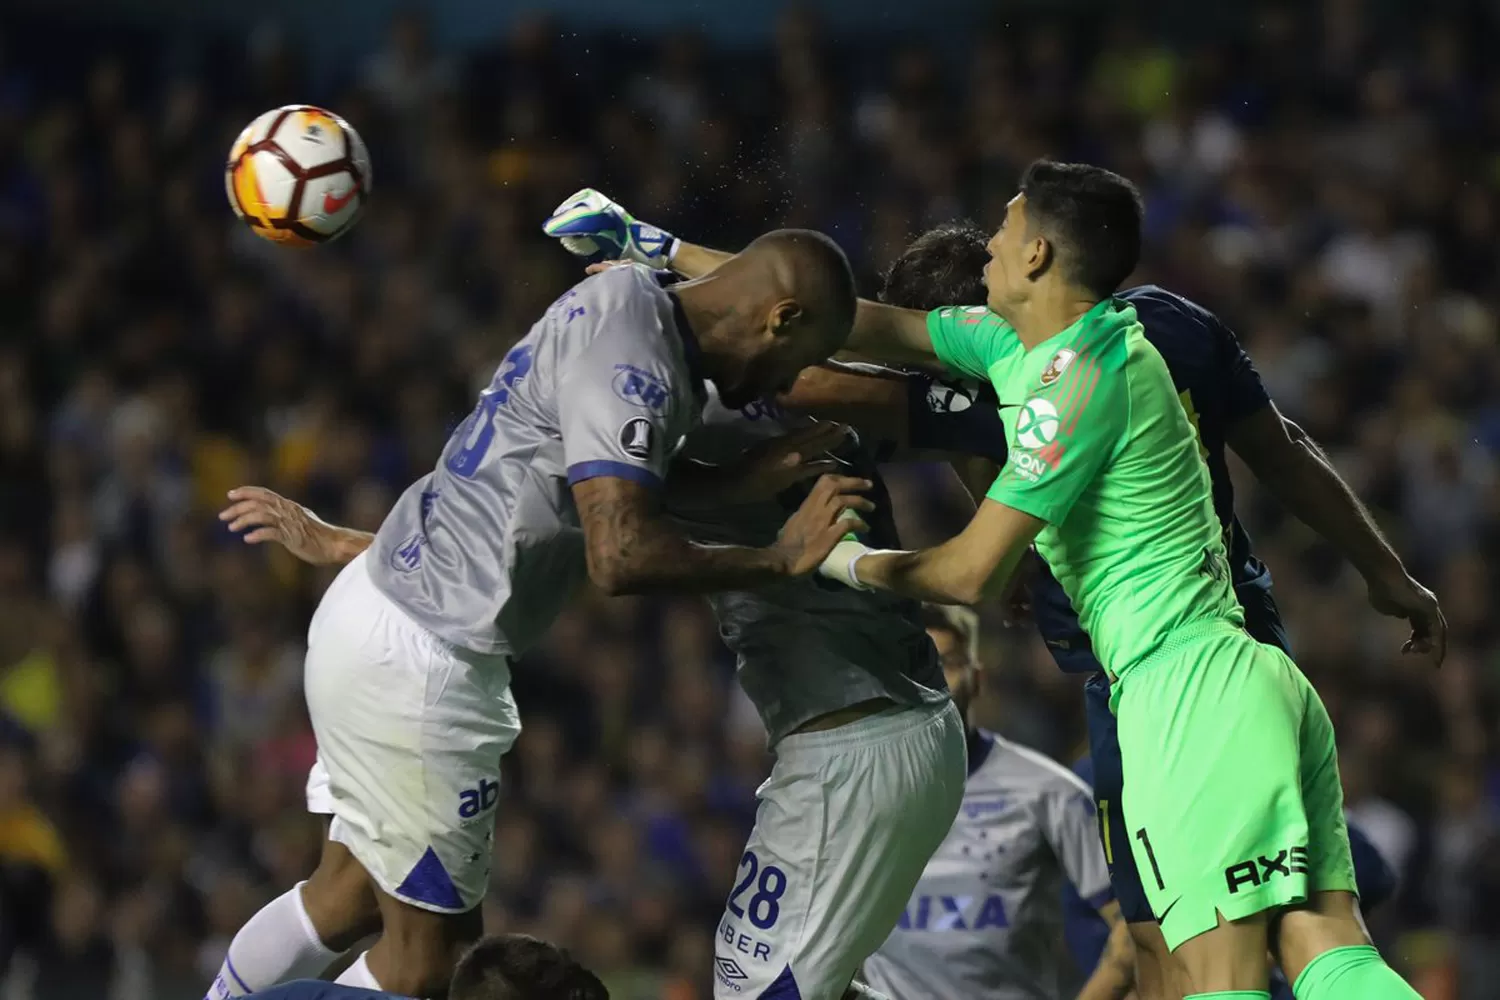 LA JUGADA POLÉMICA. El árbitro consideró que el cabezazo del jugador de Cruzeiro fue intencional.